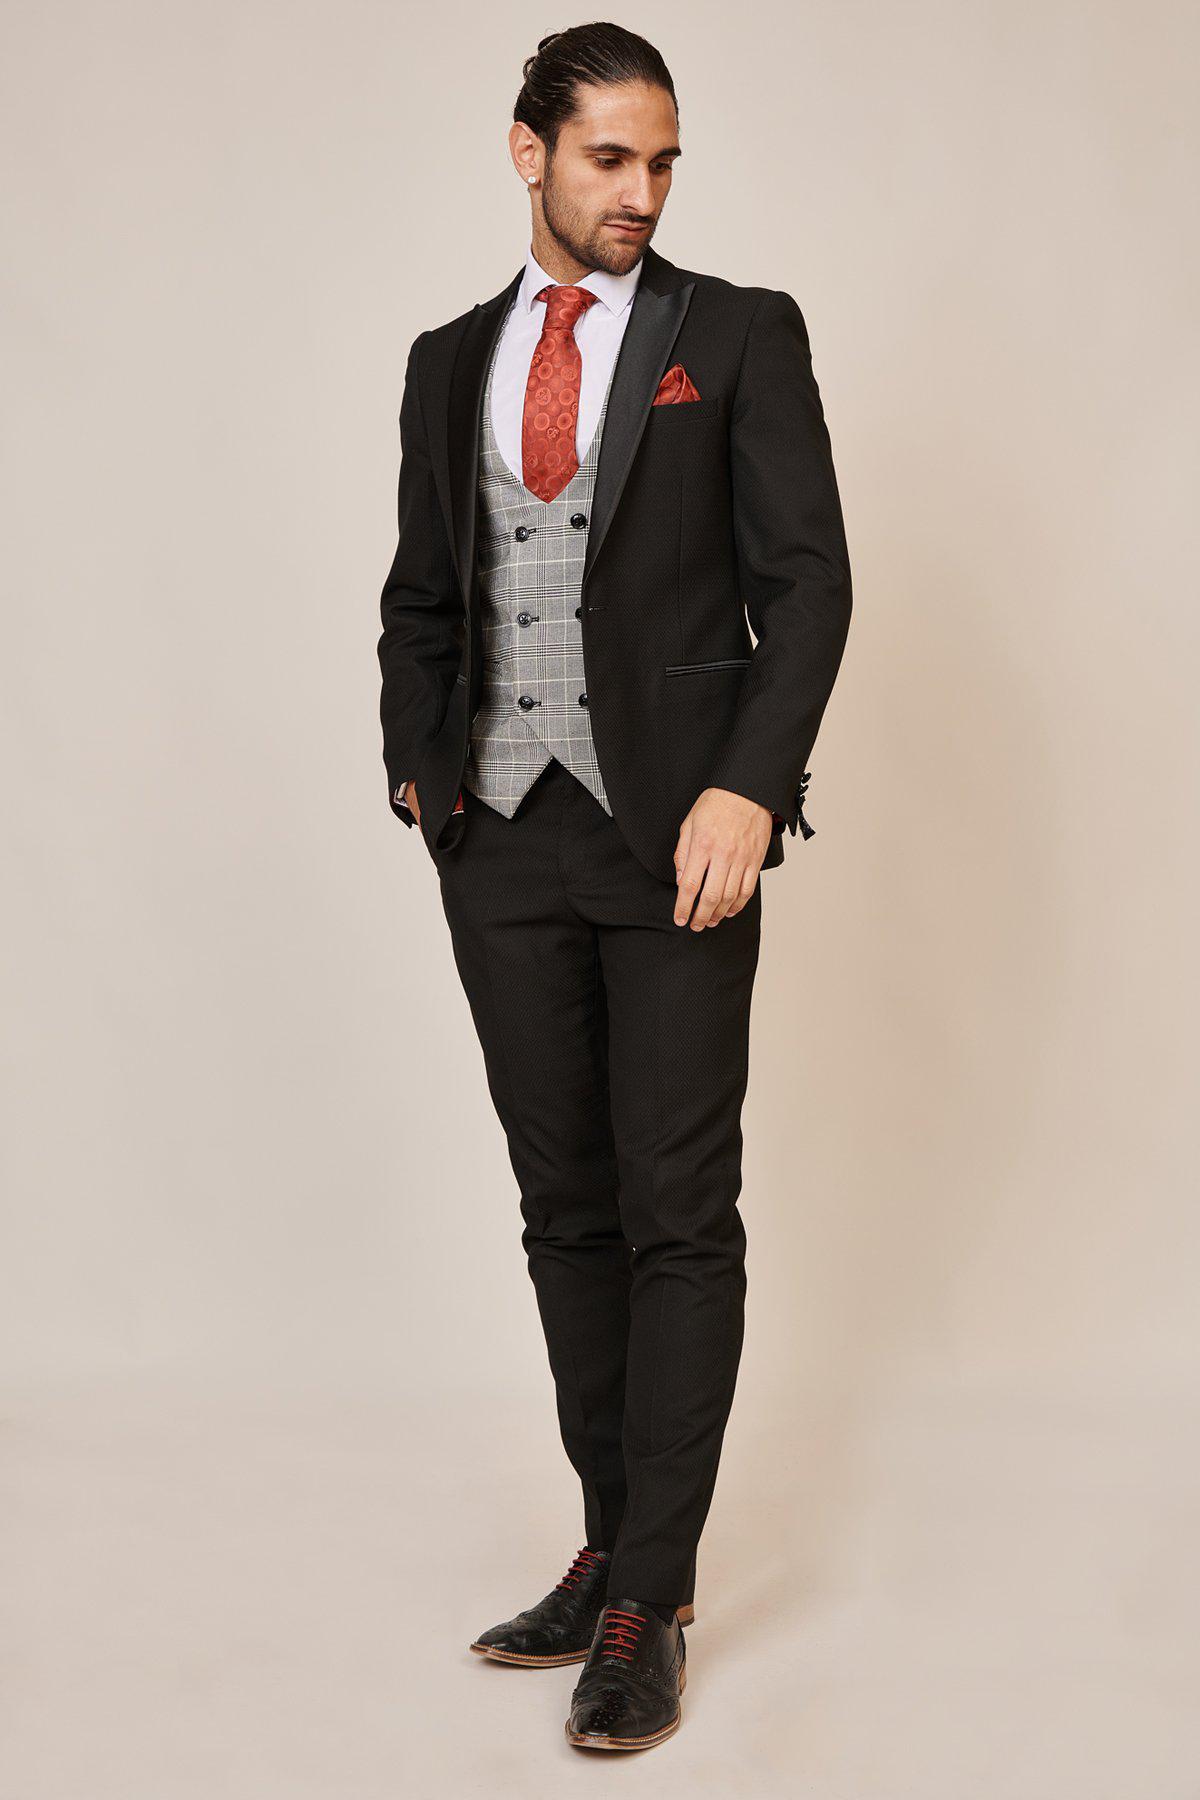 Dark Grey Suit Vest | Vests for Weddings & Events